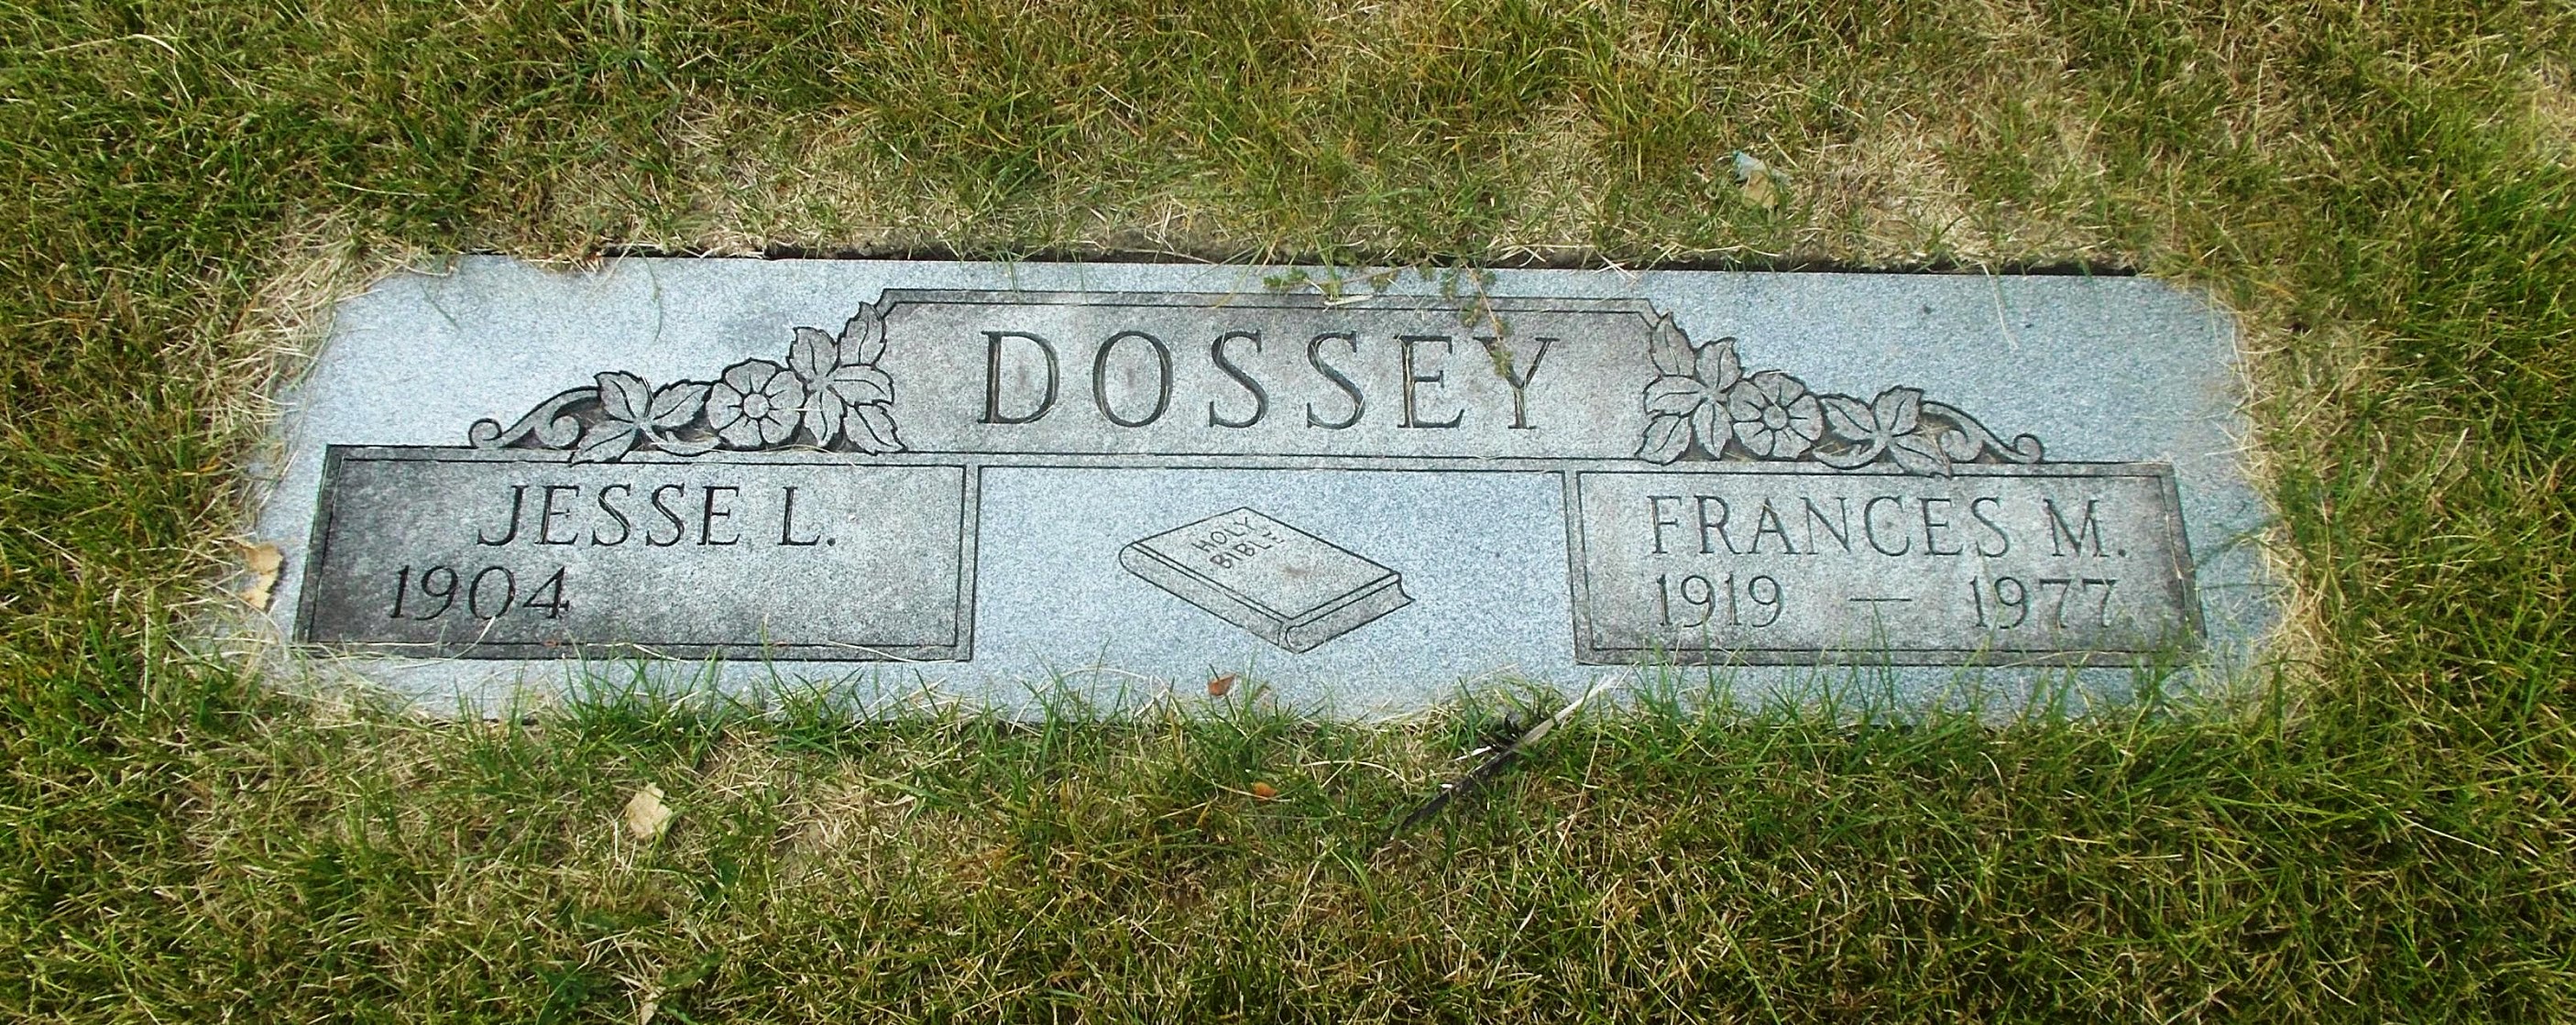 Jesse L Dossey